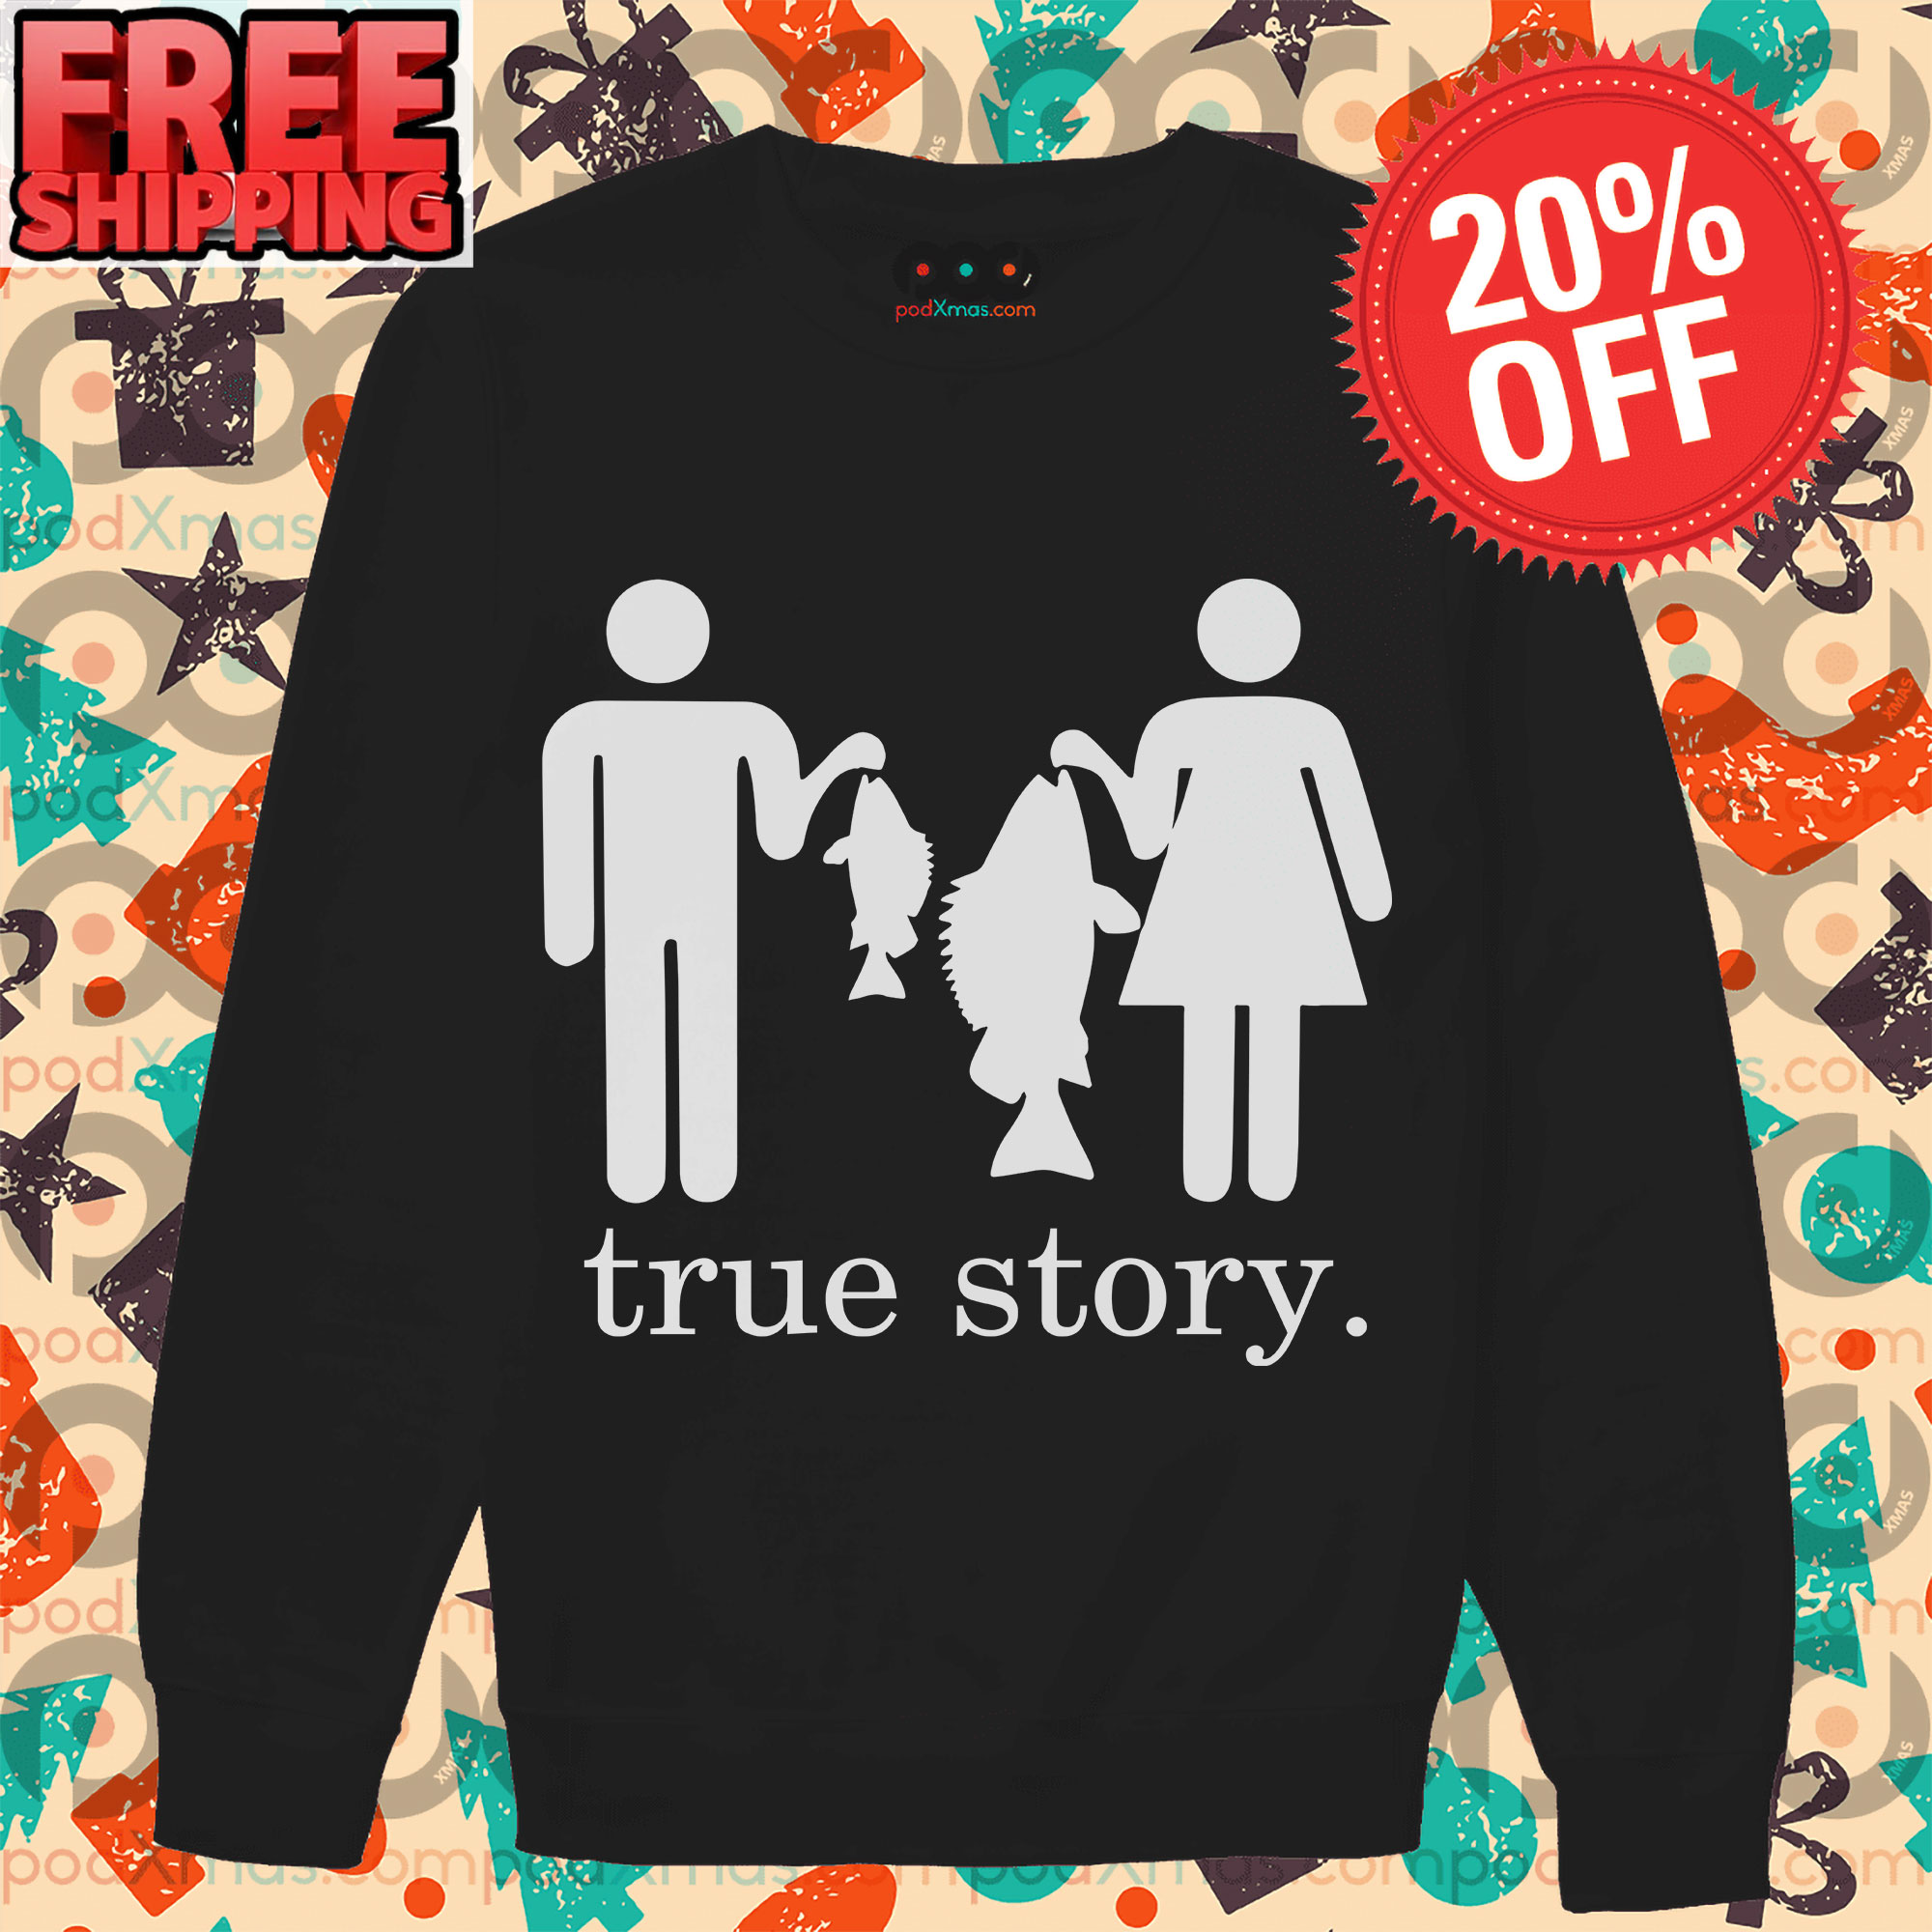 Get True Story Man Fishing And Women Fishing Shirt For Free